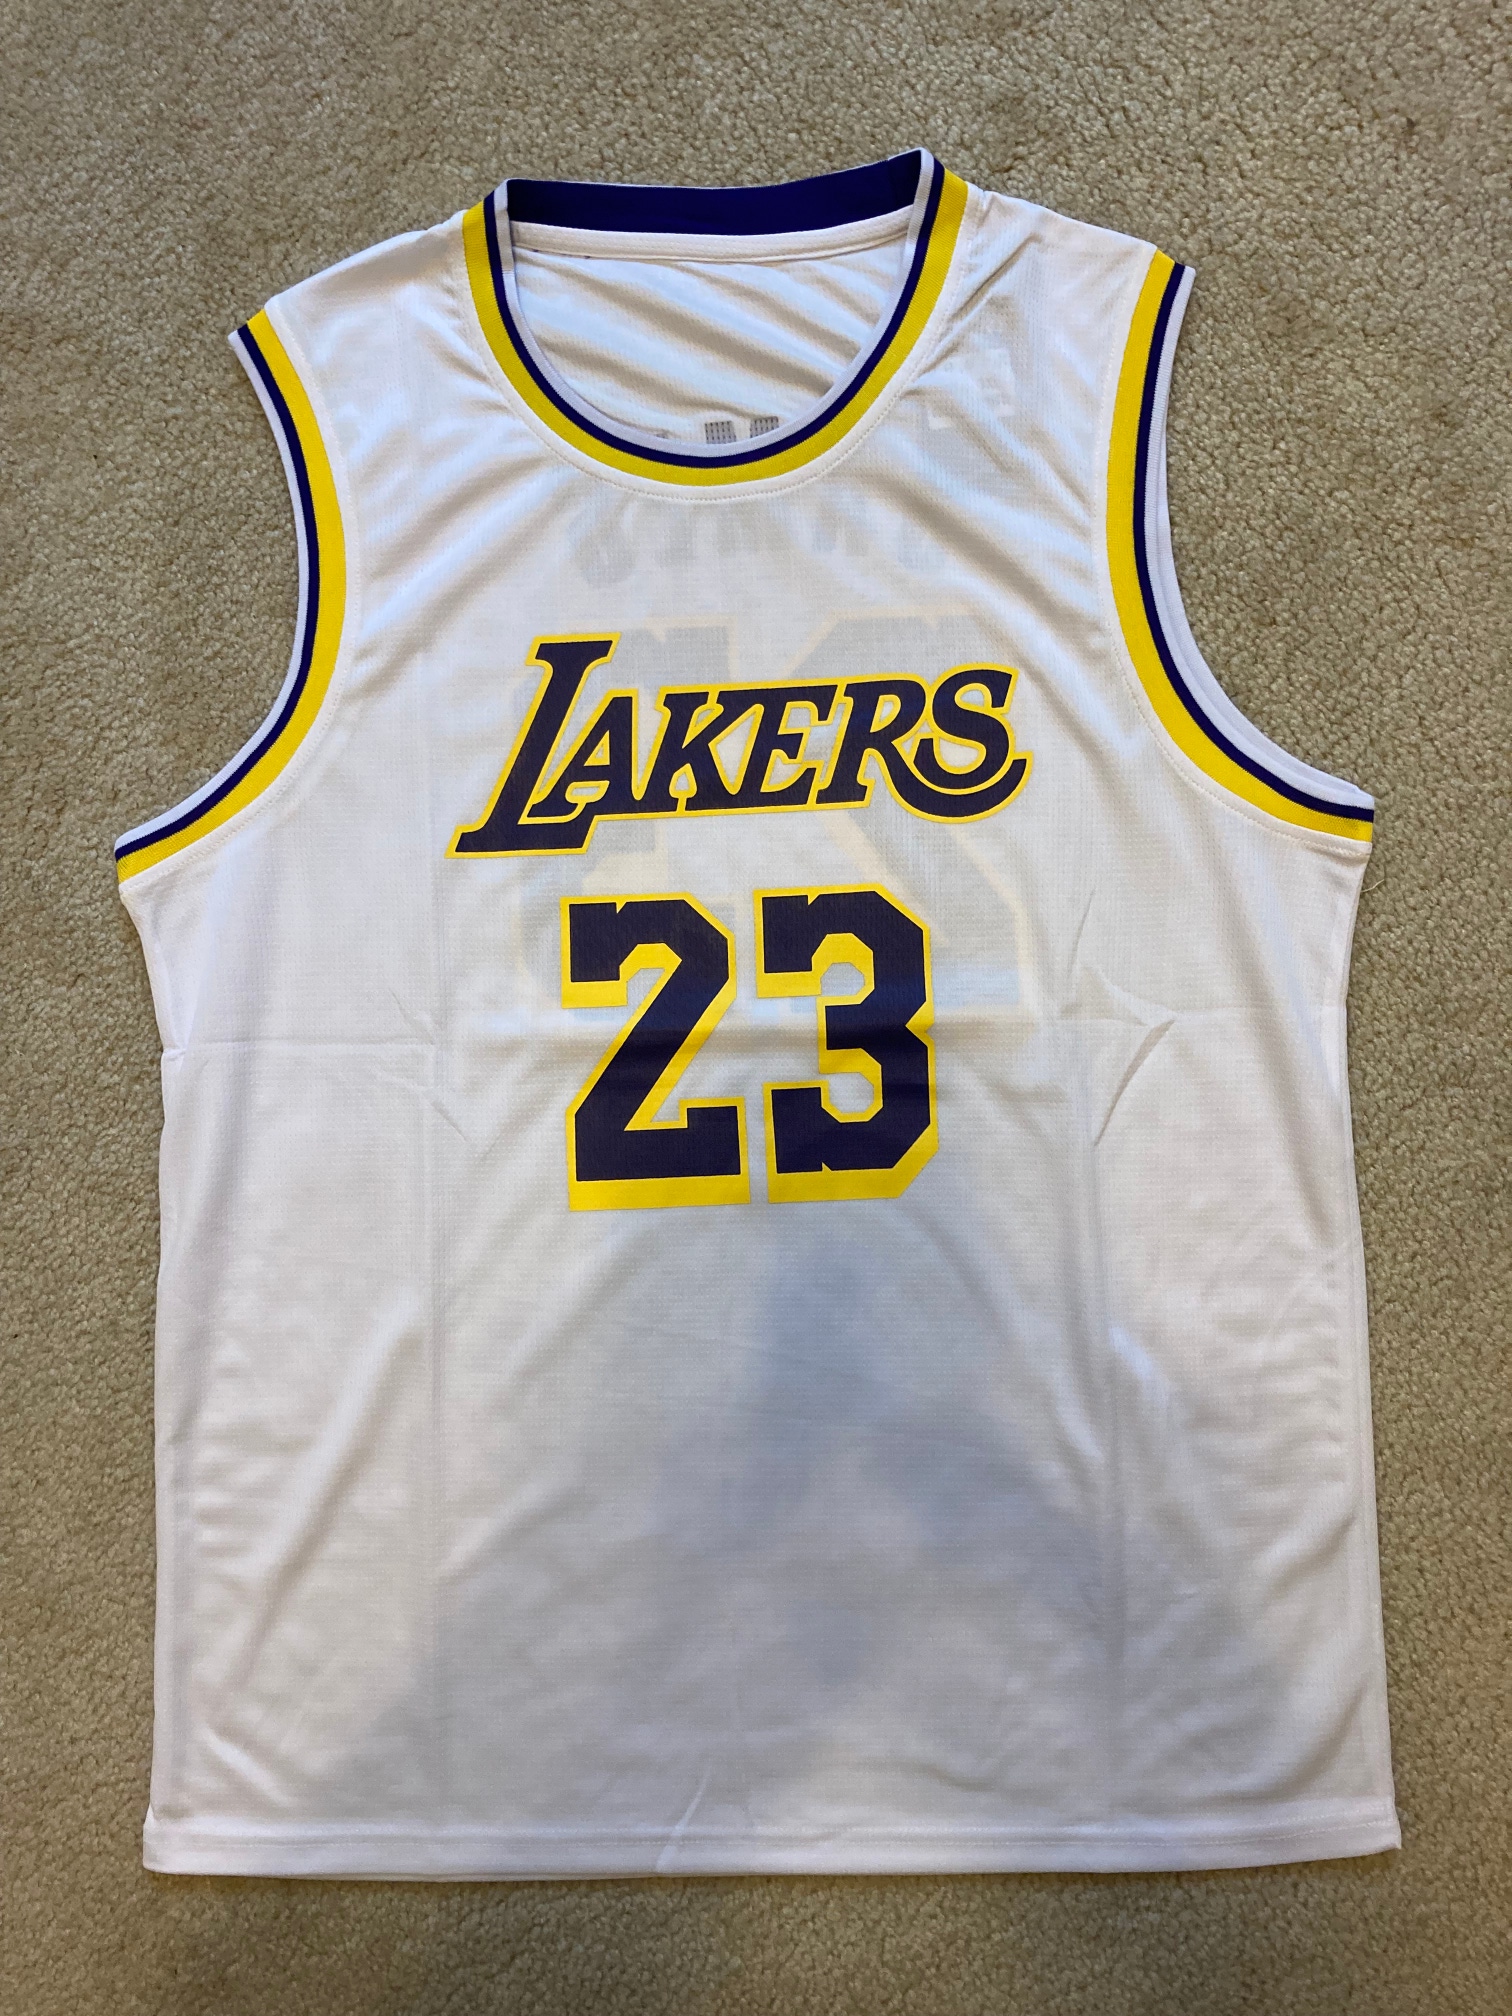 Men's LeBron James Jersey - S-XL - White - Lakers